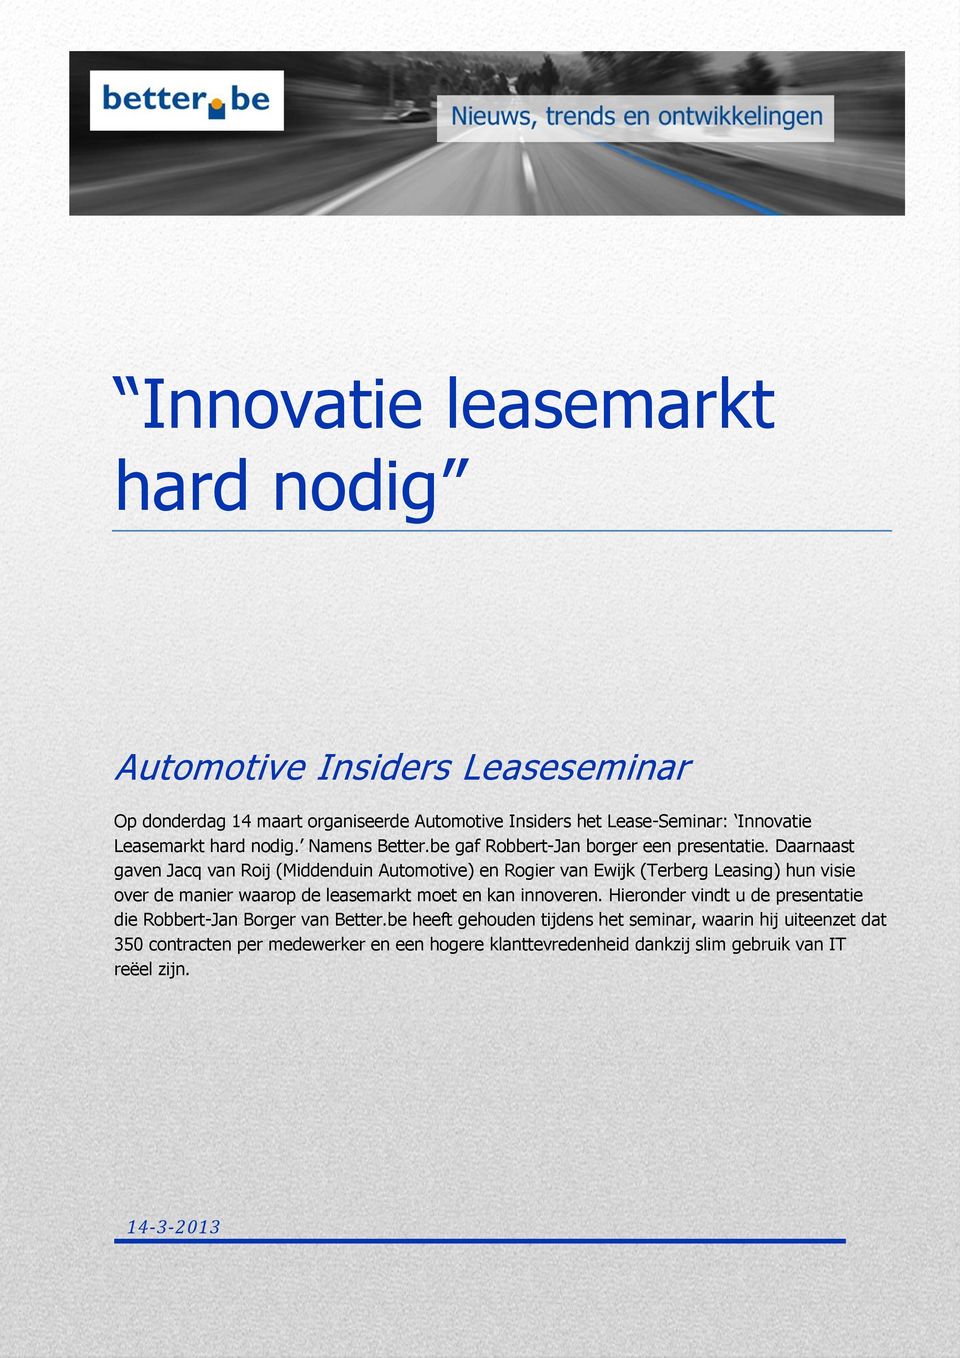 Daarnaast gaven Jacq van Roij (Middenduin Automotive) en Rogier van Ewijk (Terberg Leasing) hun visie over de manier waarop de leasemarkt moet en kan